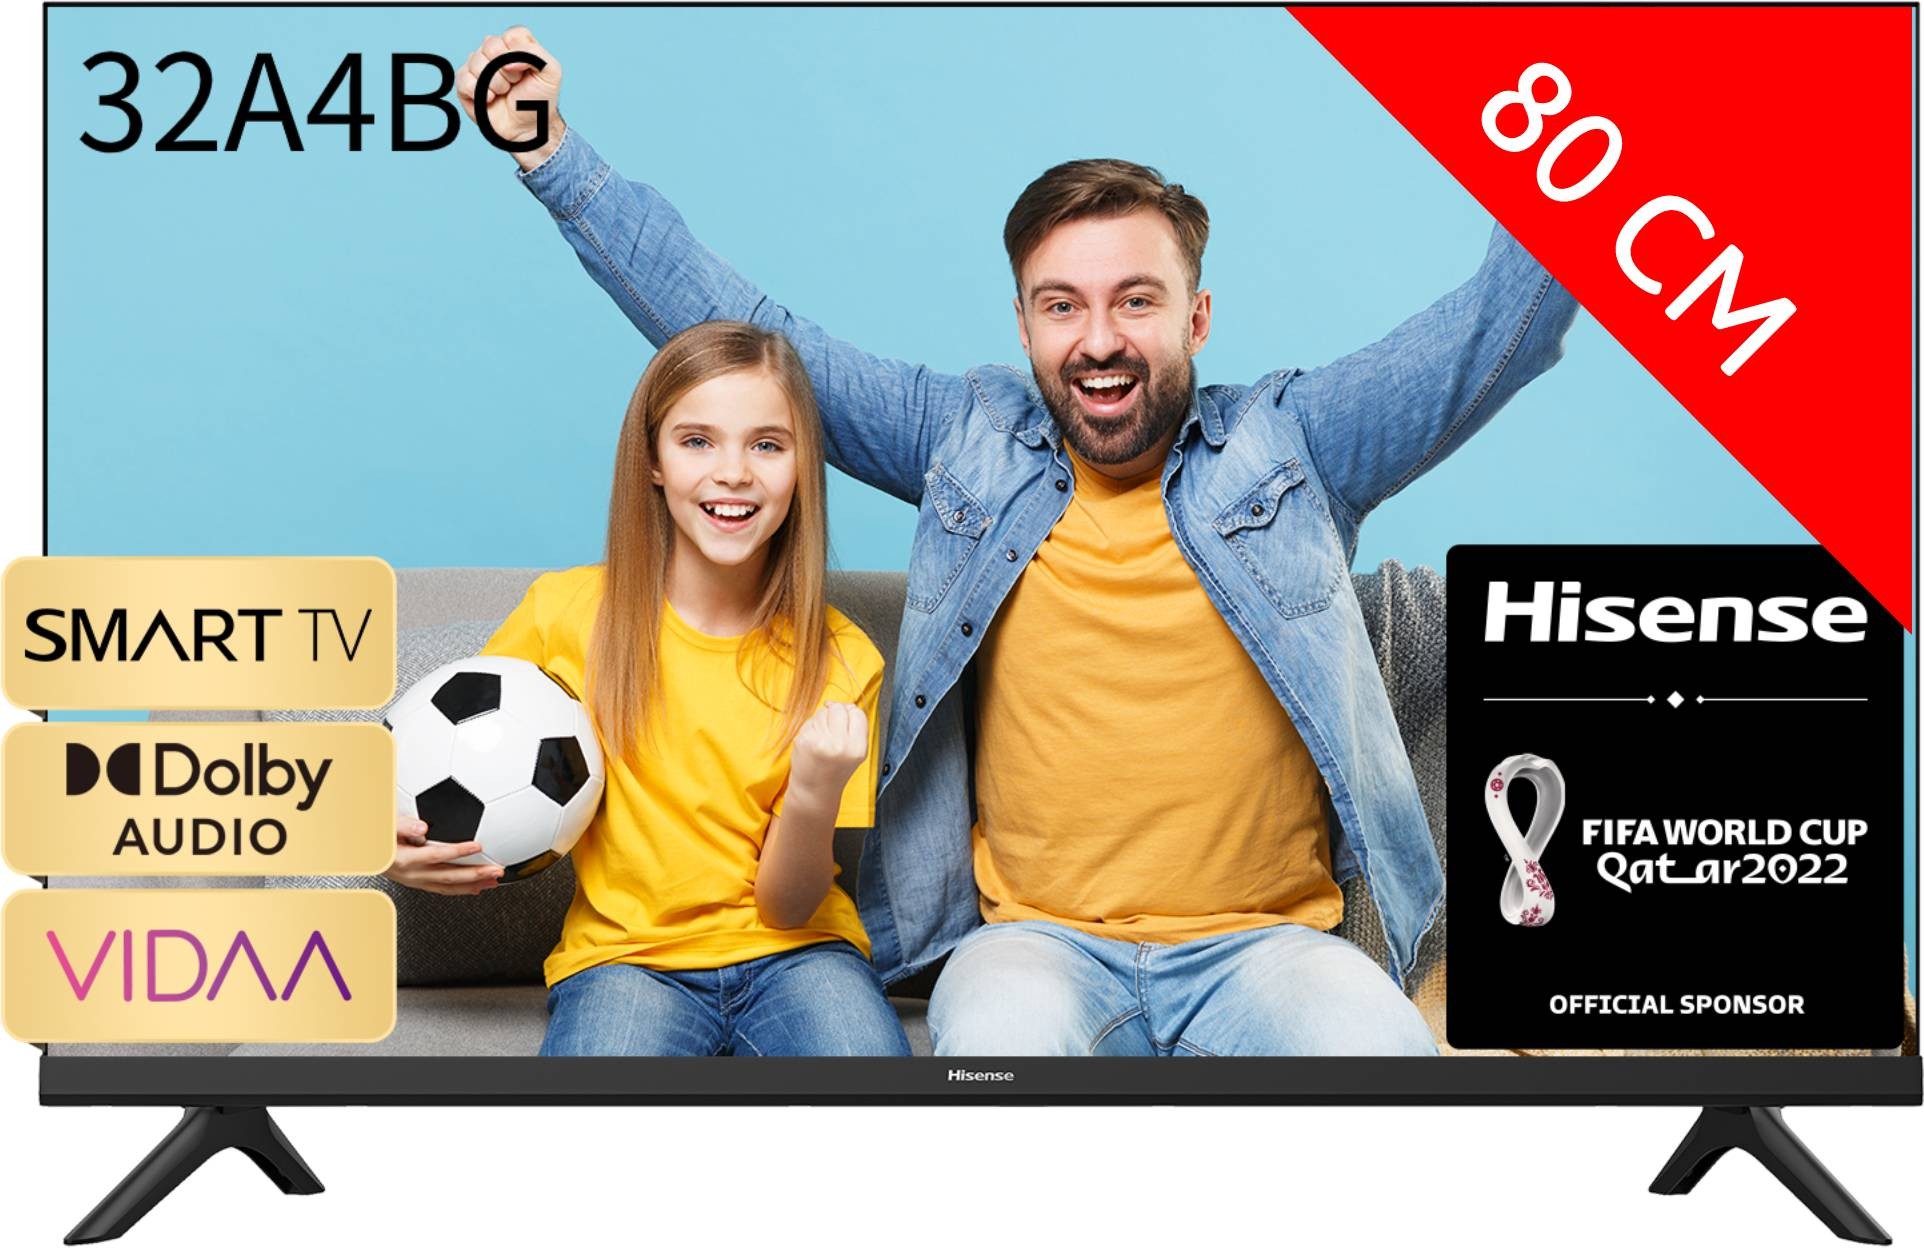 TV LED Full HD 80 cm 32A4BG